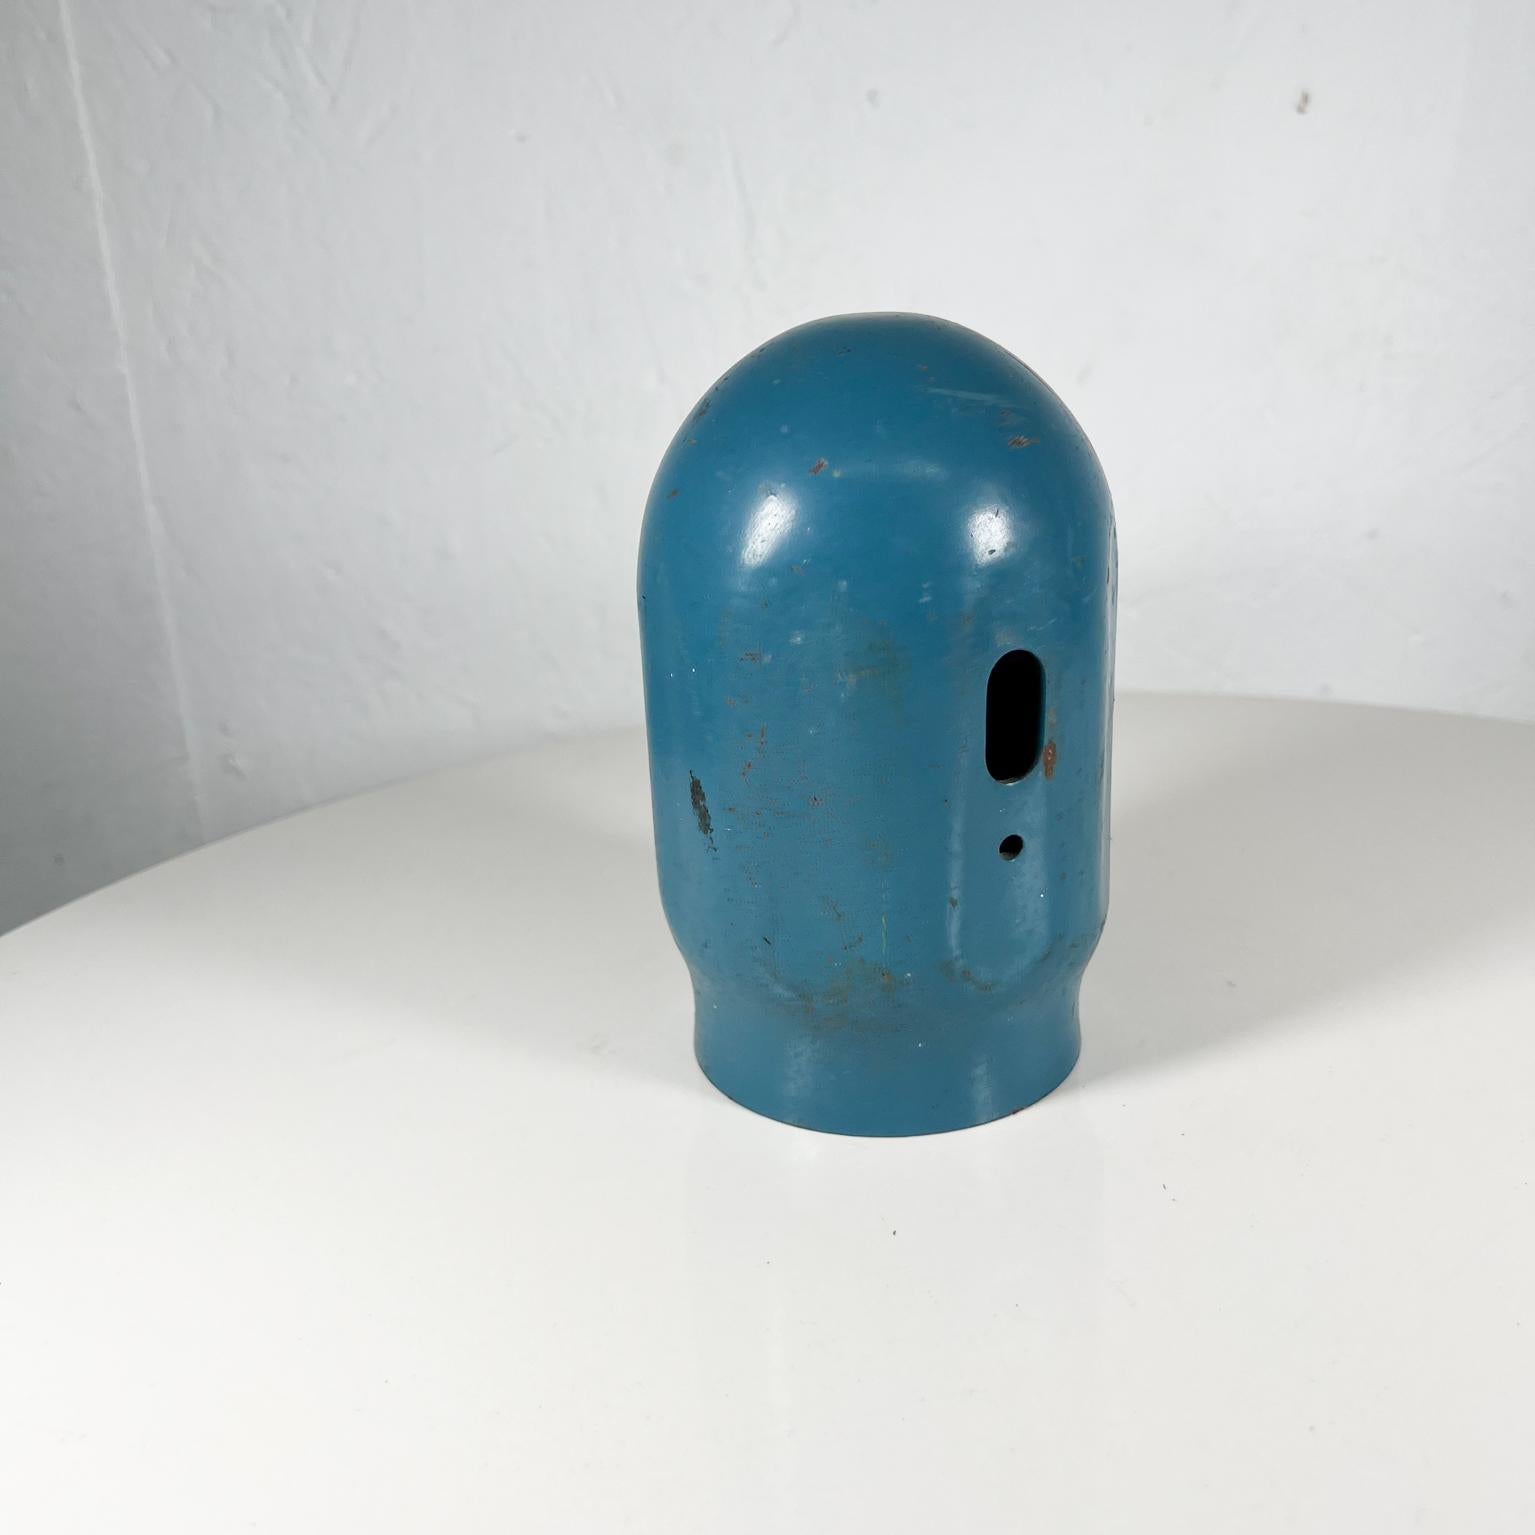 Old Vintage Blau Gewinde Gasflasche Cap (Ende des 20. Jahrhunderts)